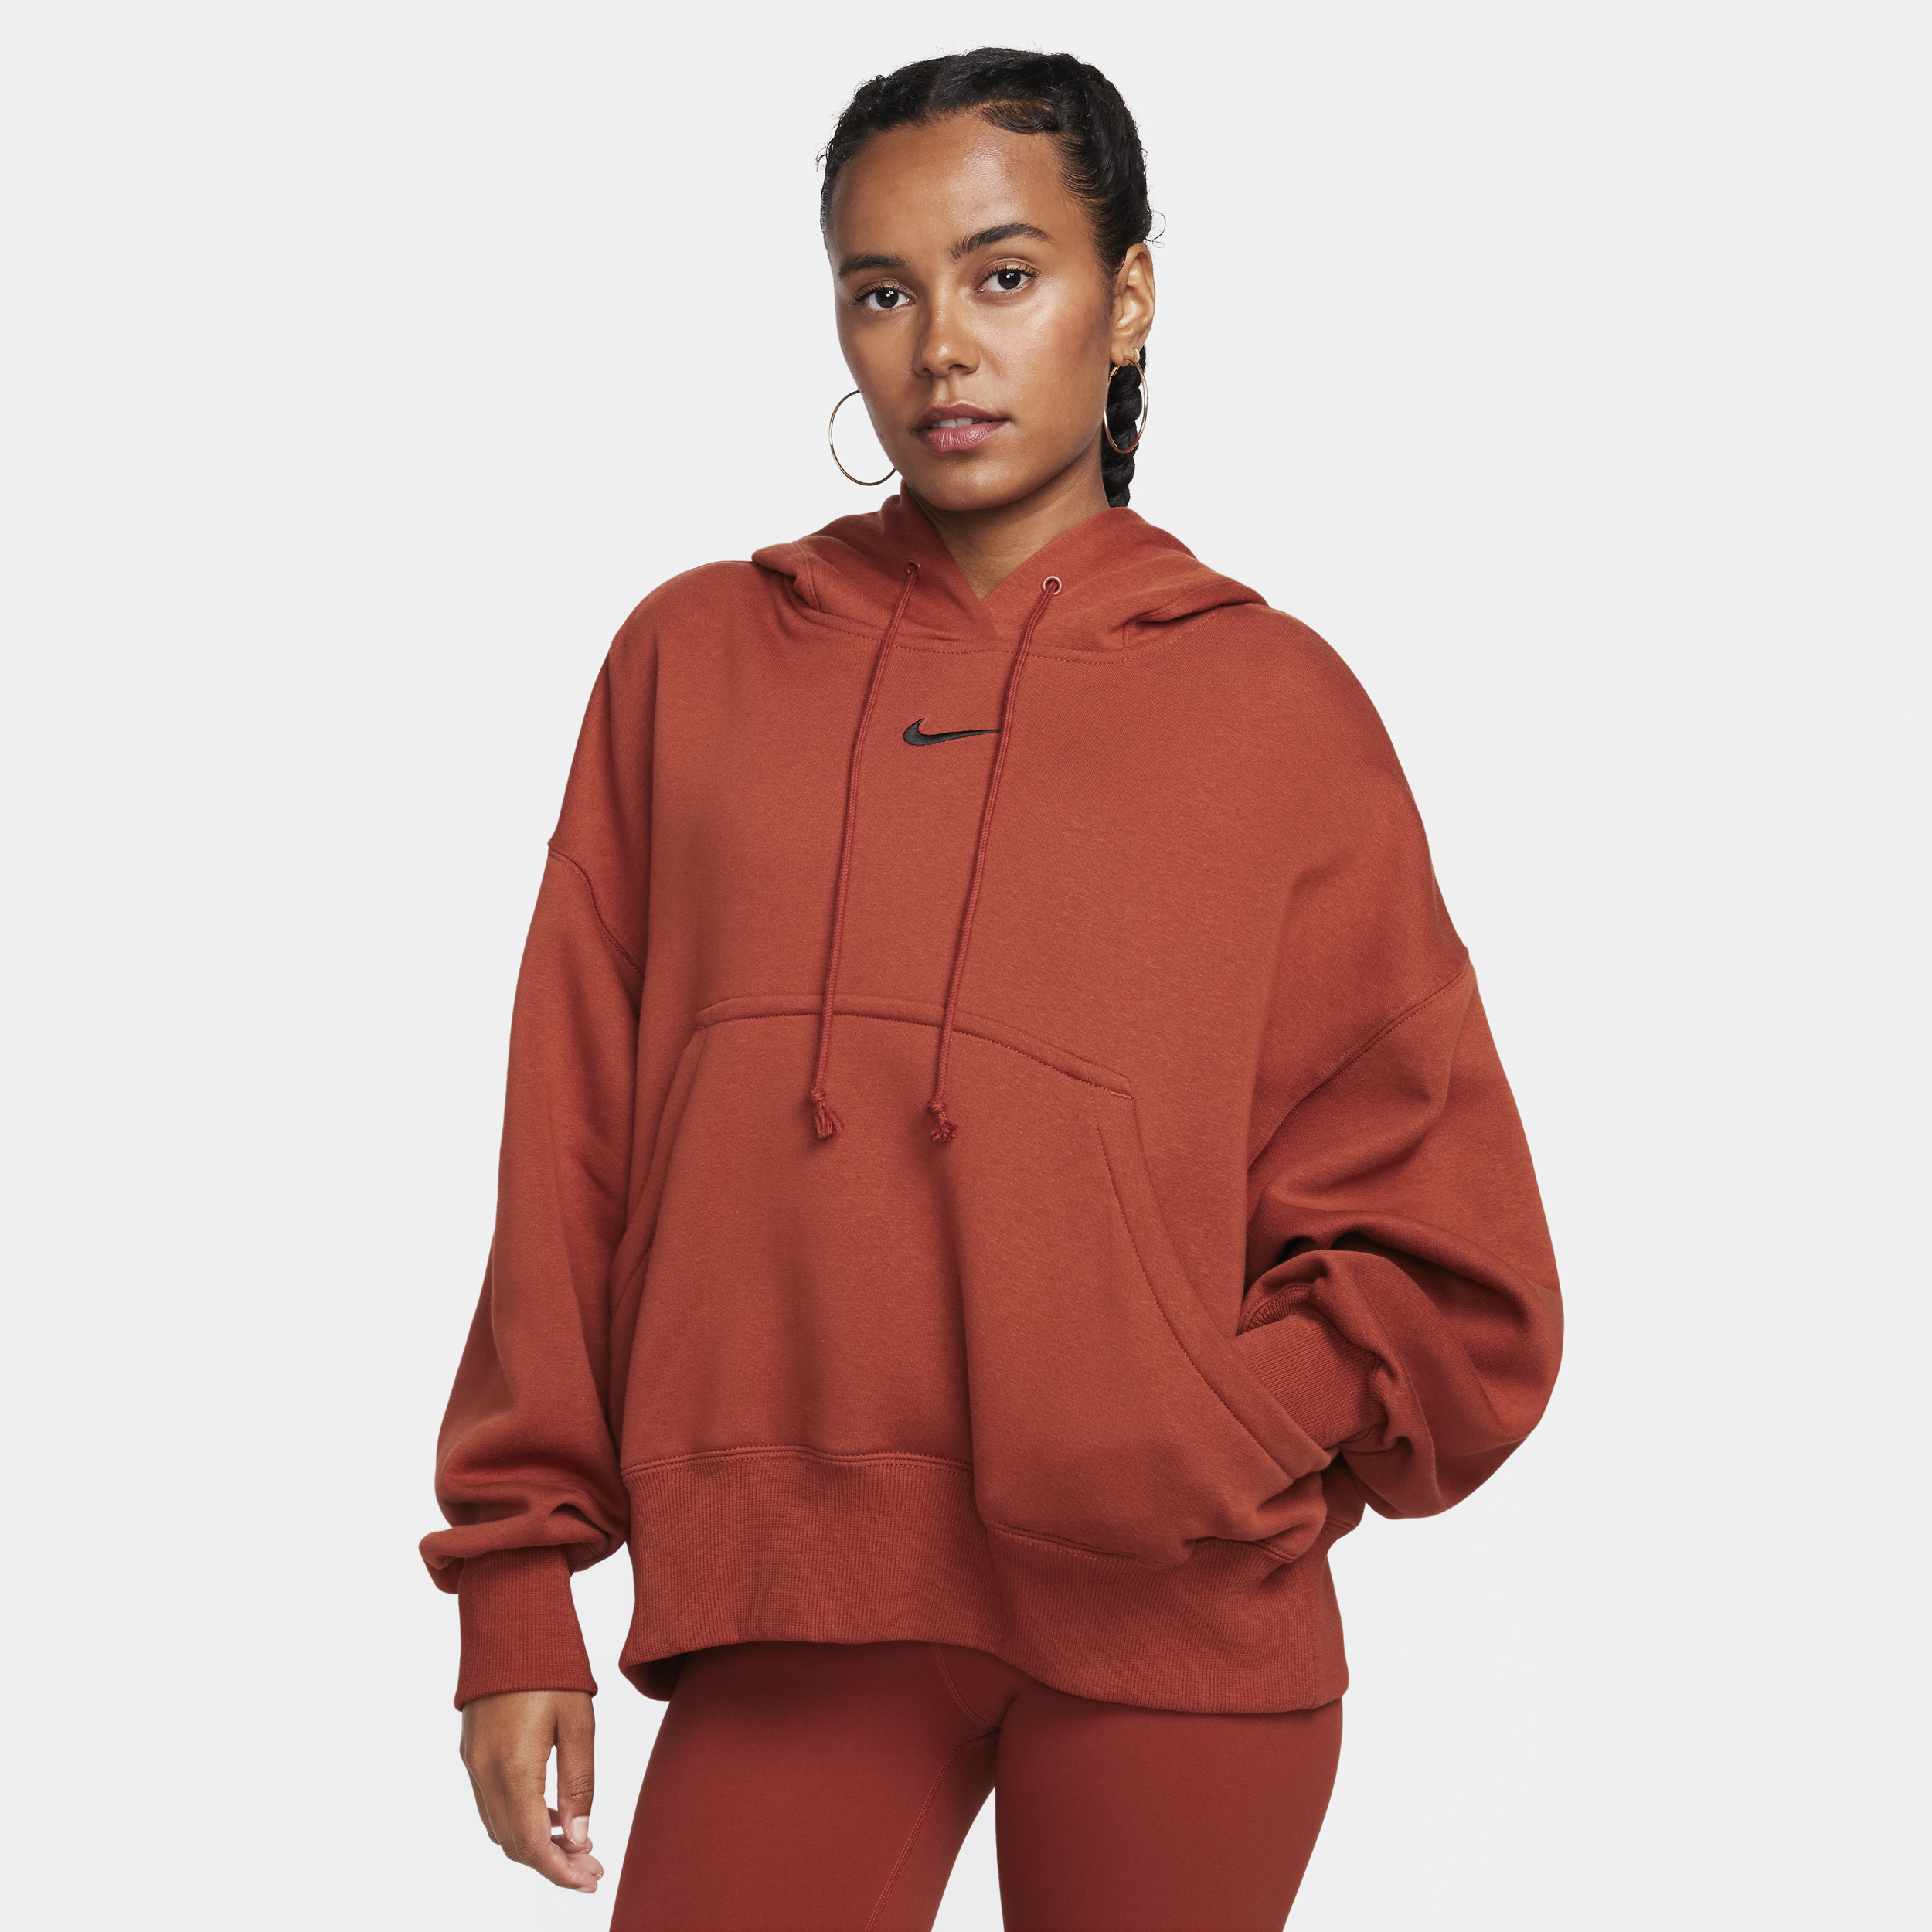 Nike Women's Sportswear Phoenix Fleece Over-oversized Pullover